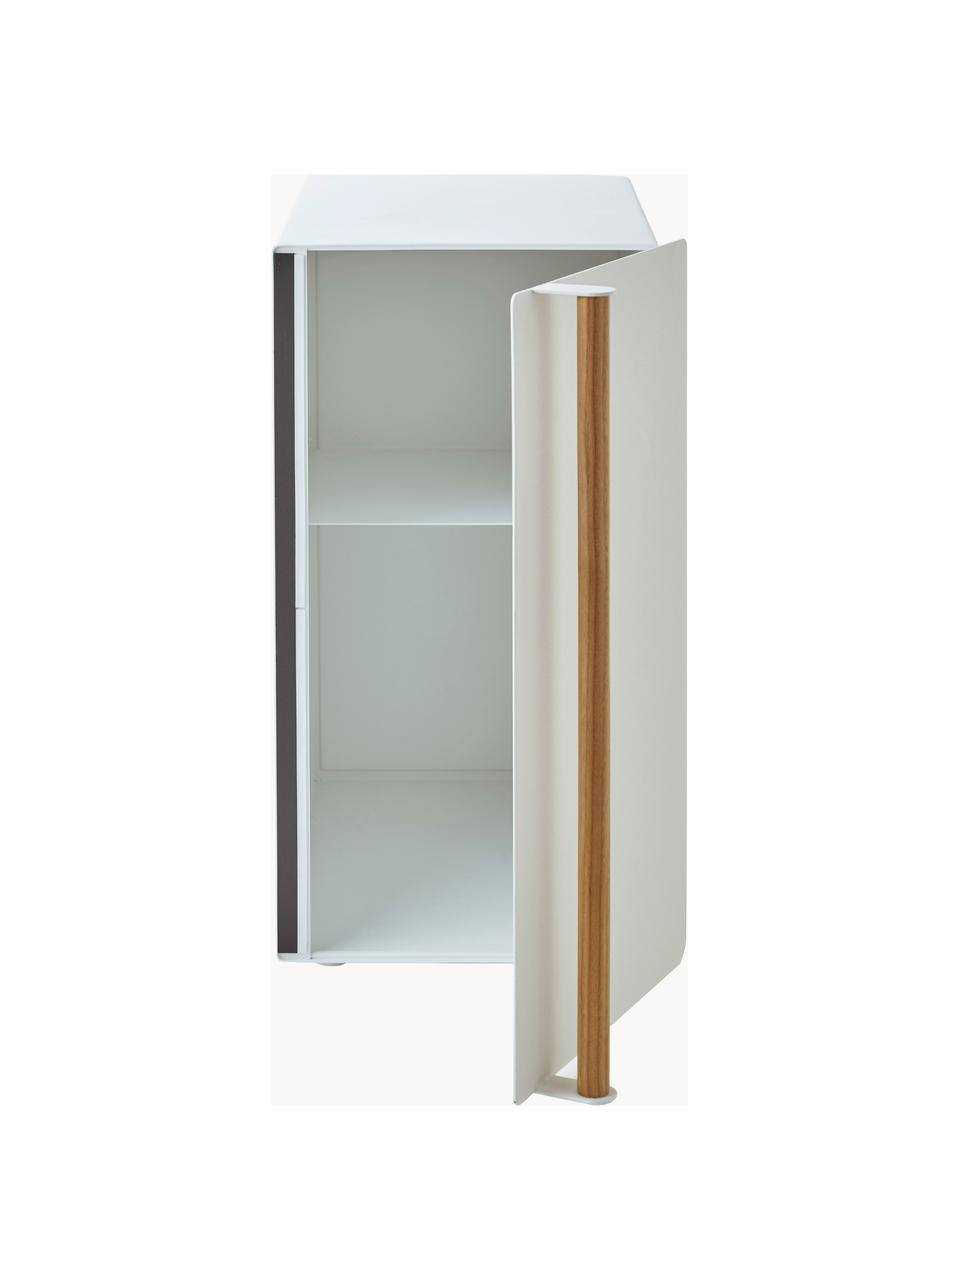 Vertikaler Brotkasten Tosca mit magnetischer Tür, Korpus: Metall, beschichtet, Griff: Holz, Weiß, Holz, B 22 x H 41 cm